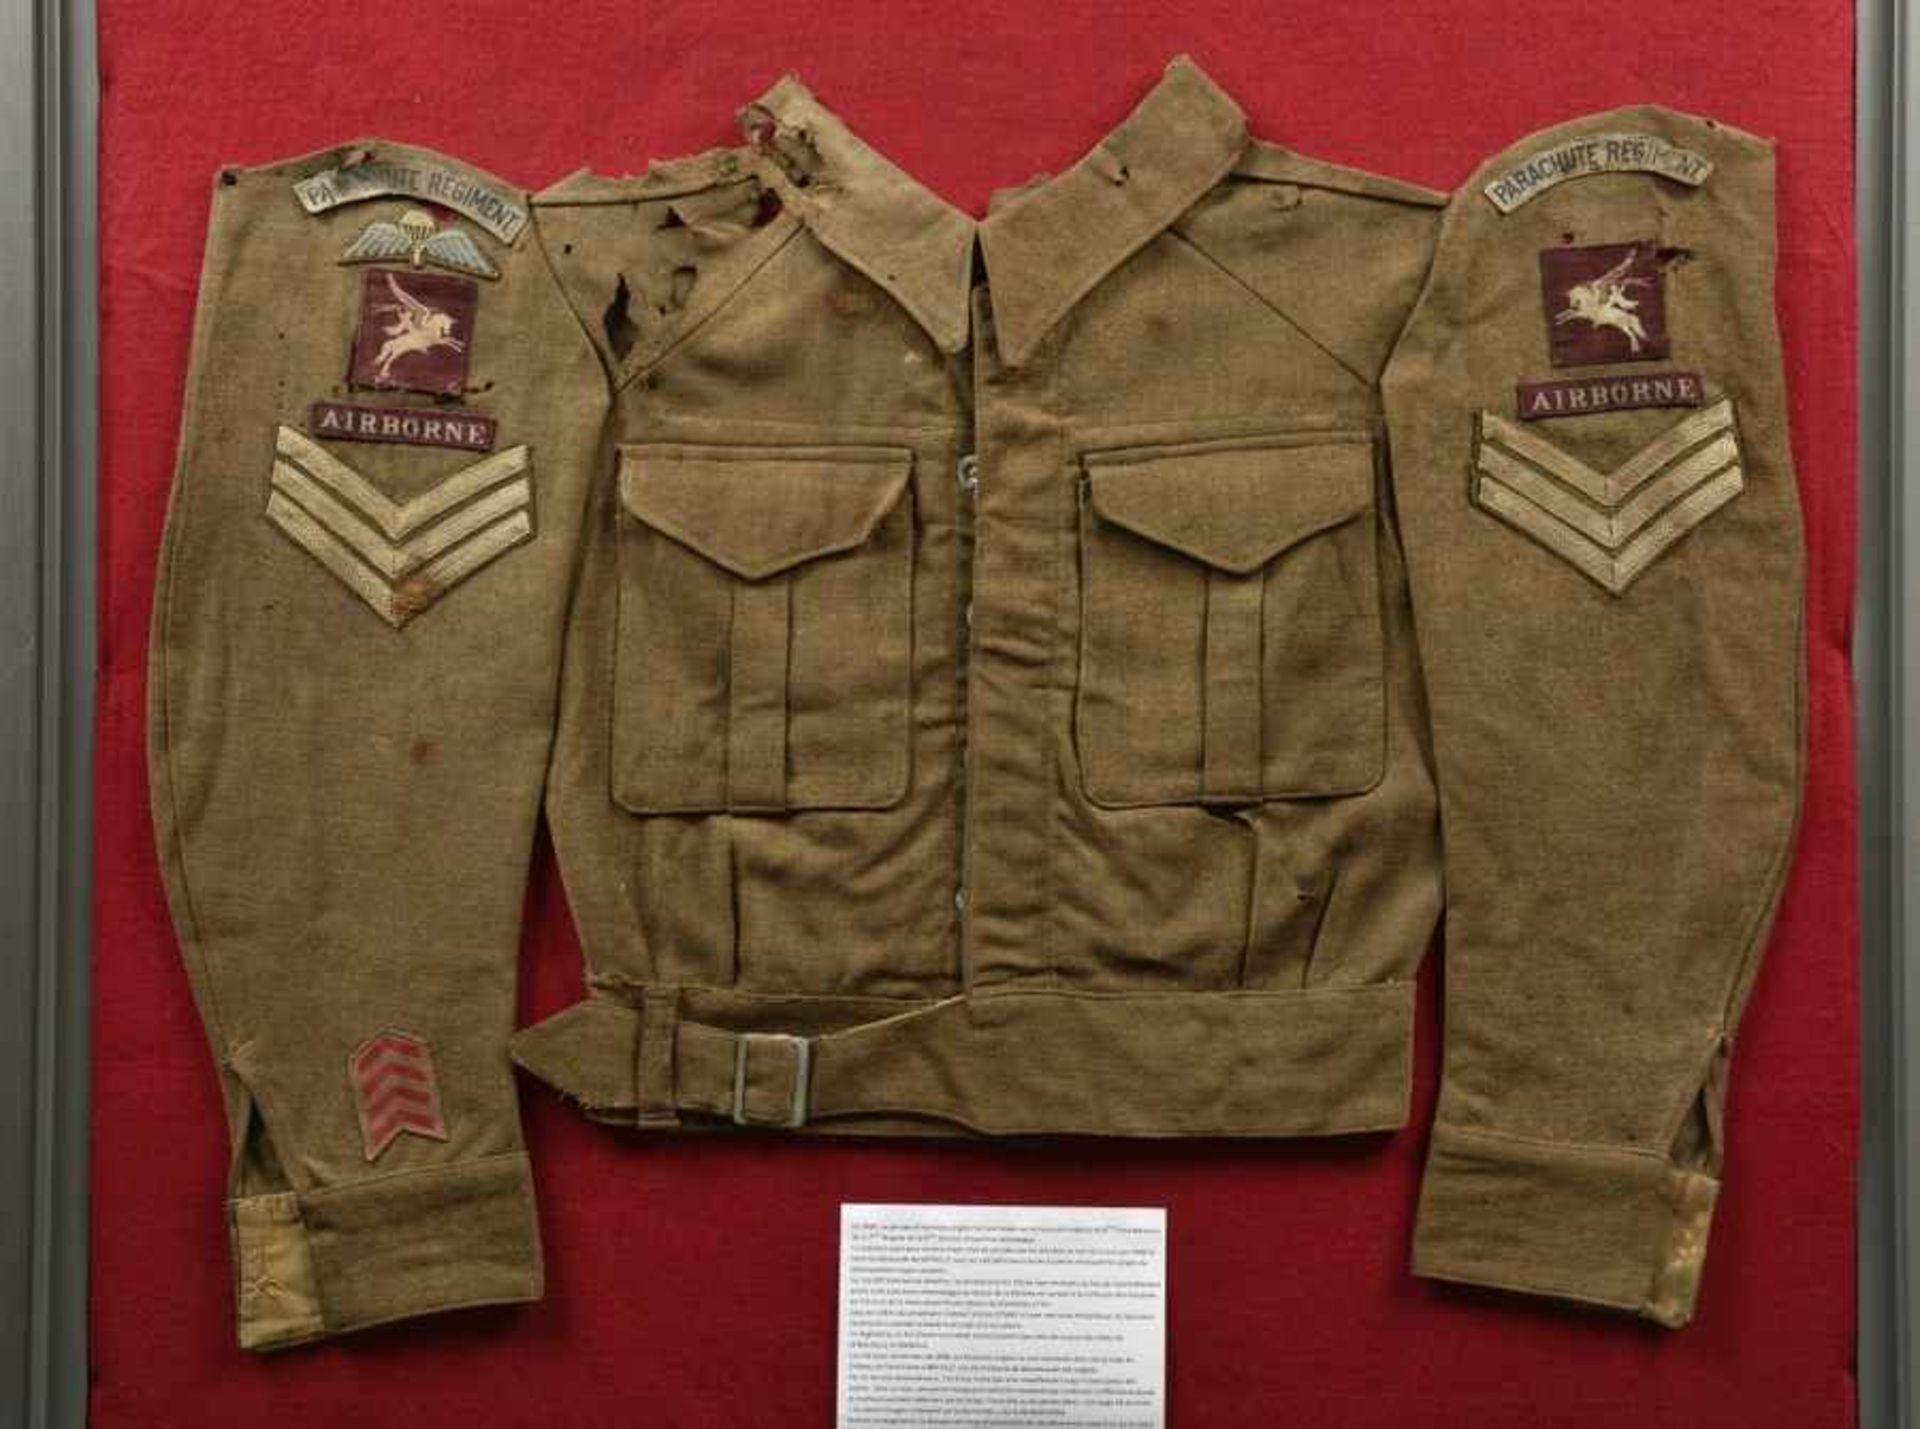 Relique de Battle Dress du 9ème battaillon de la 6ème Airborne. Remains of the Battledress of the